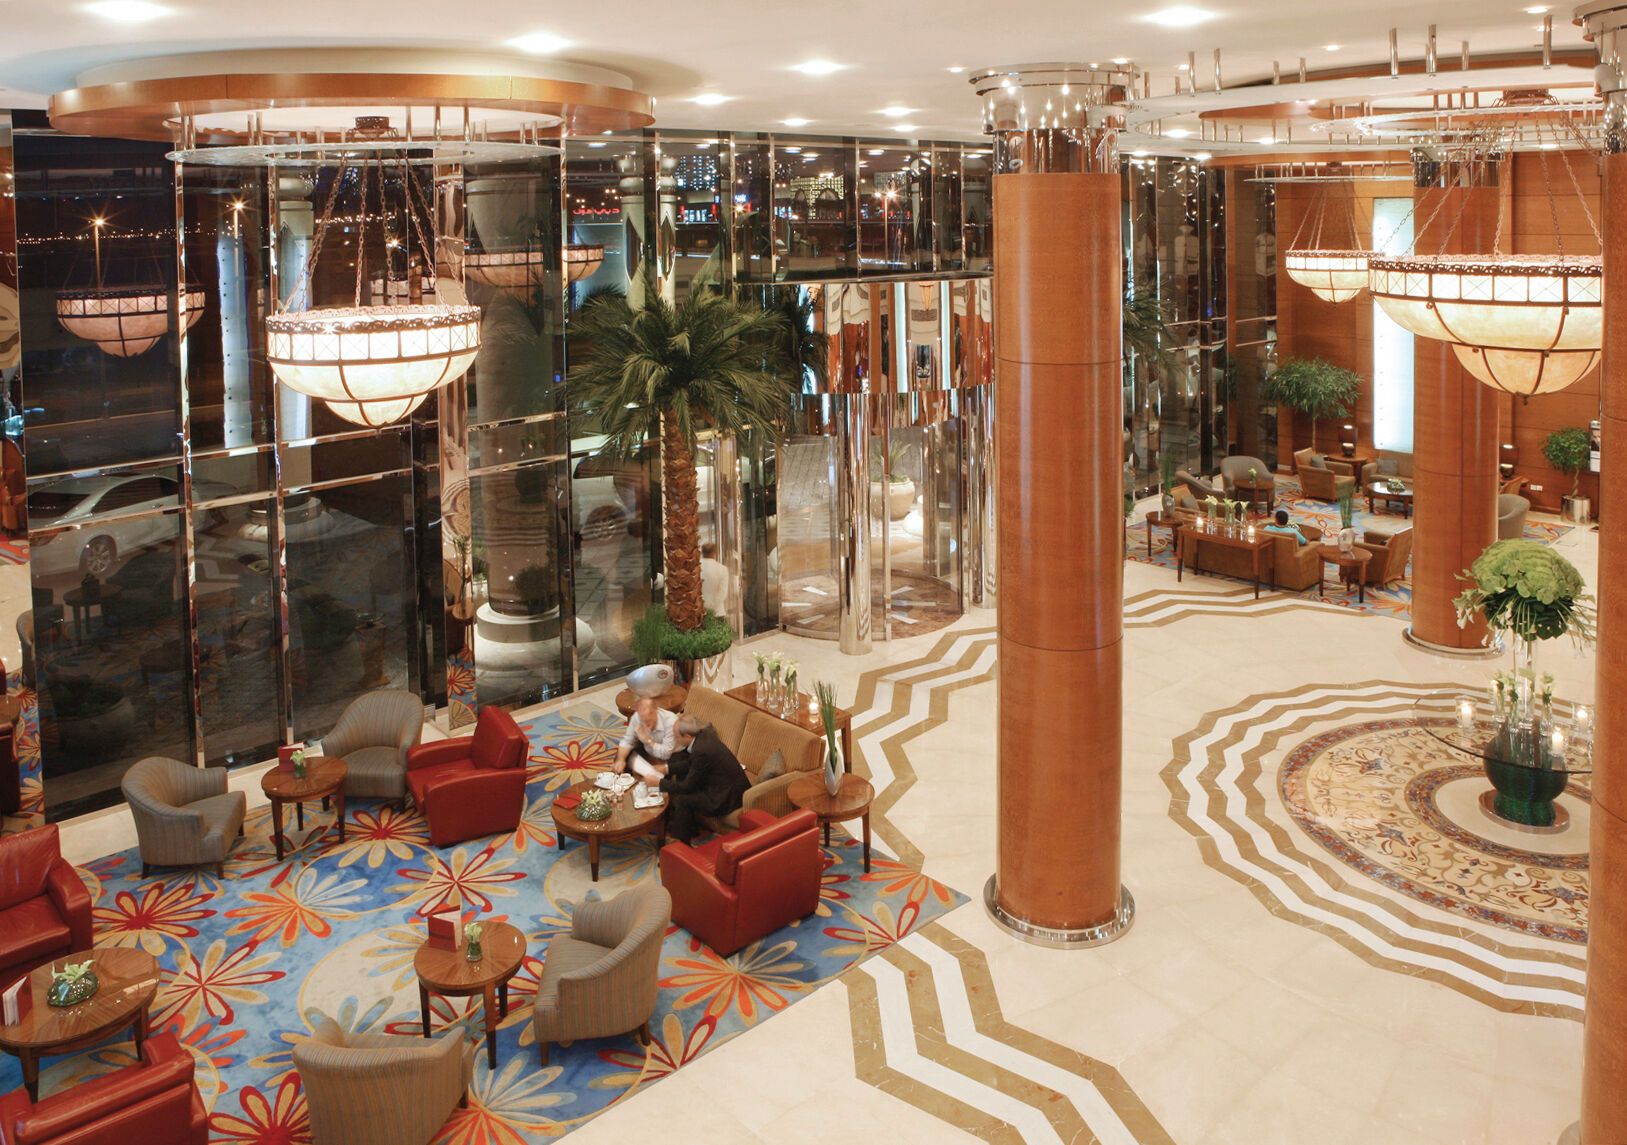 Emirats Arabes Unis - Dubaï - Hôtel Swissotel Al Murooj 5*